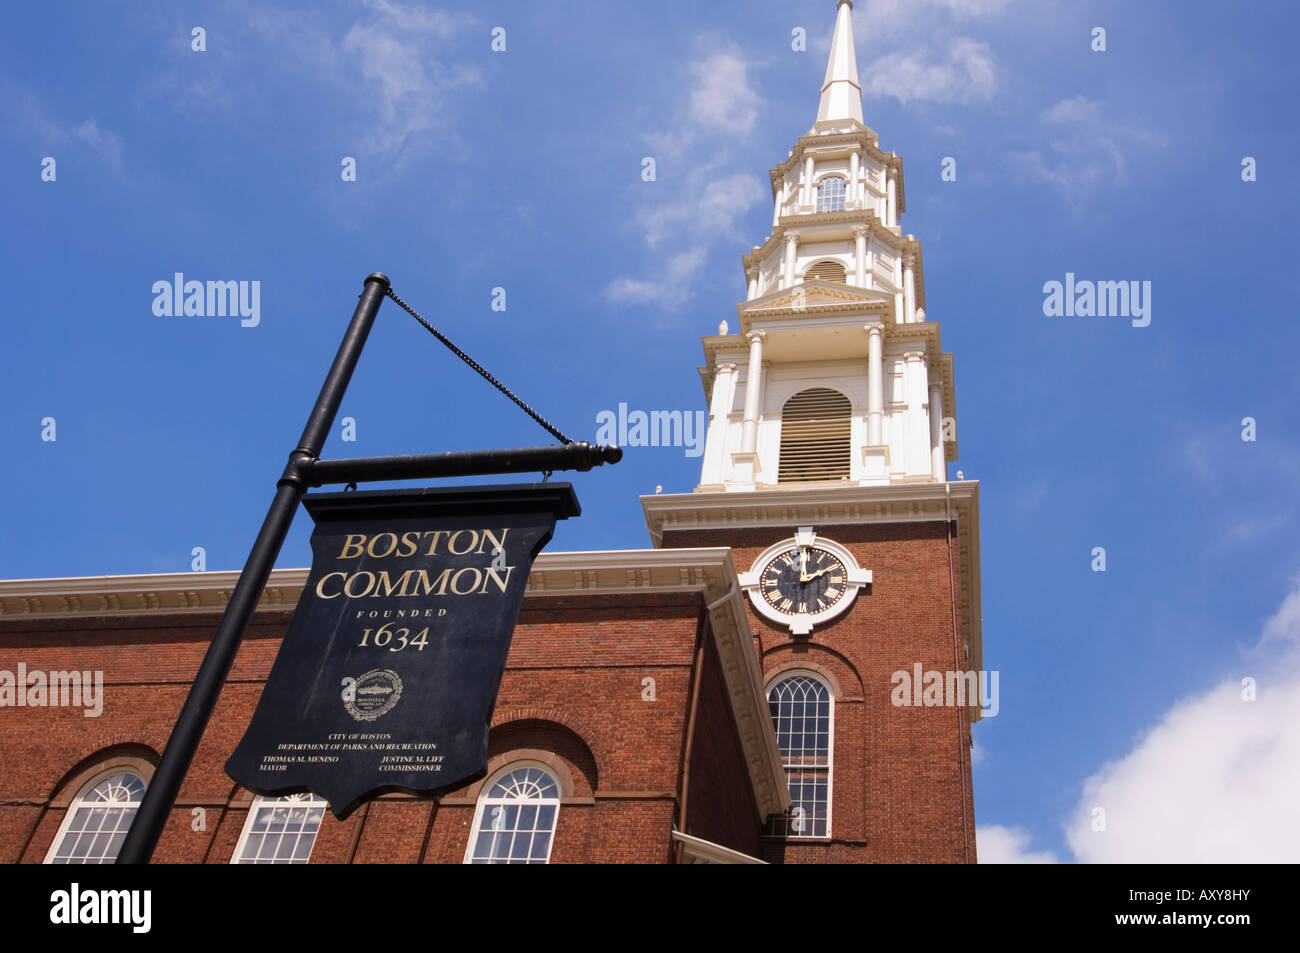 L'Église et de la rue du parc Boston Common signe, Boston, Massachusetts, USA Banque D'Images